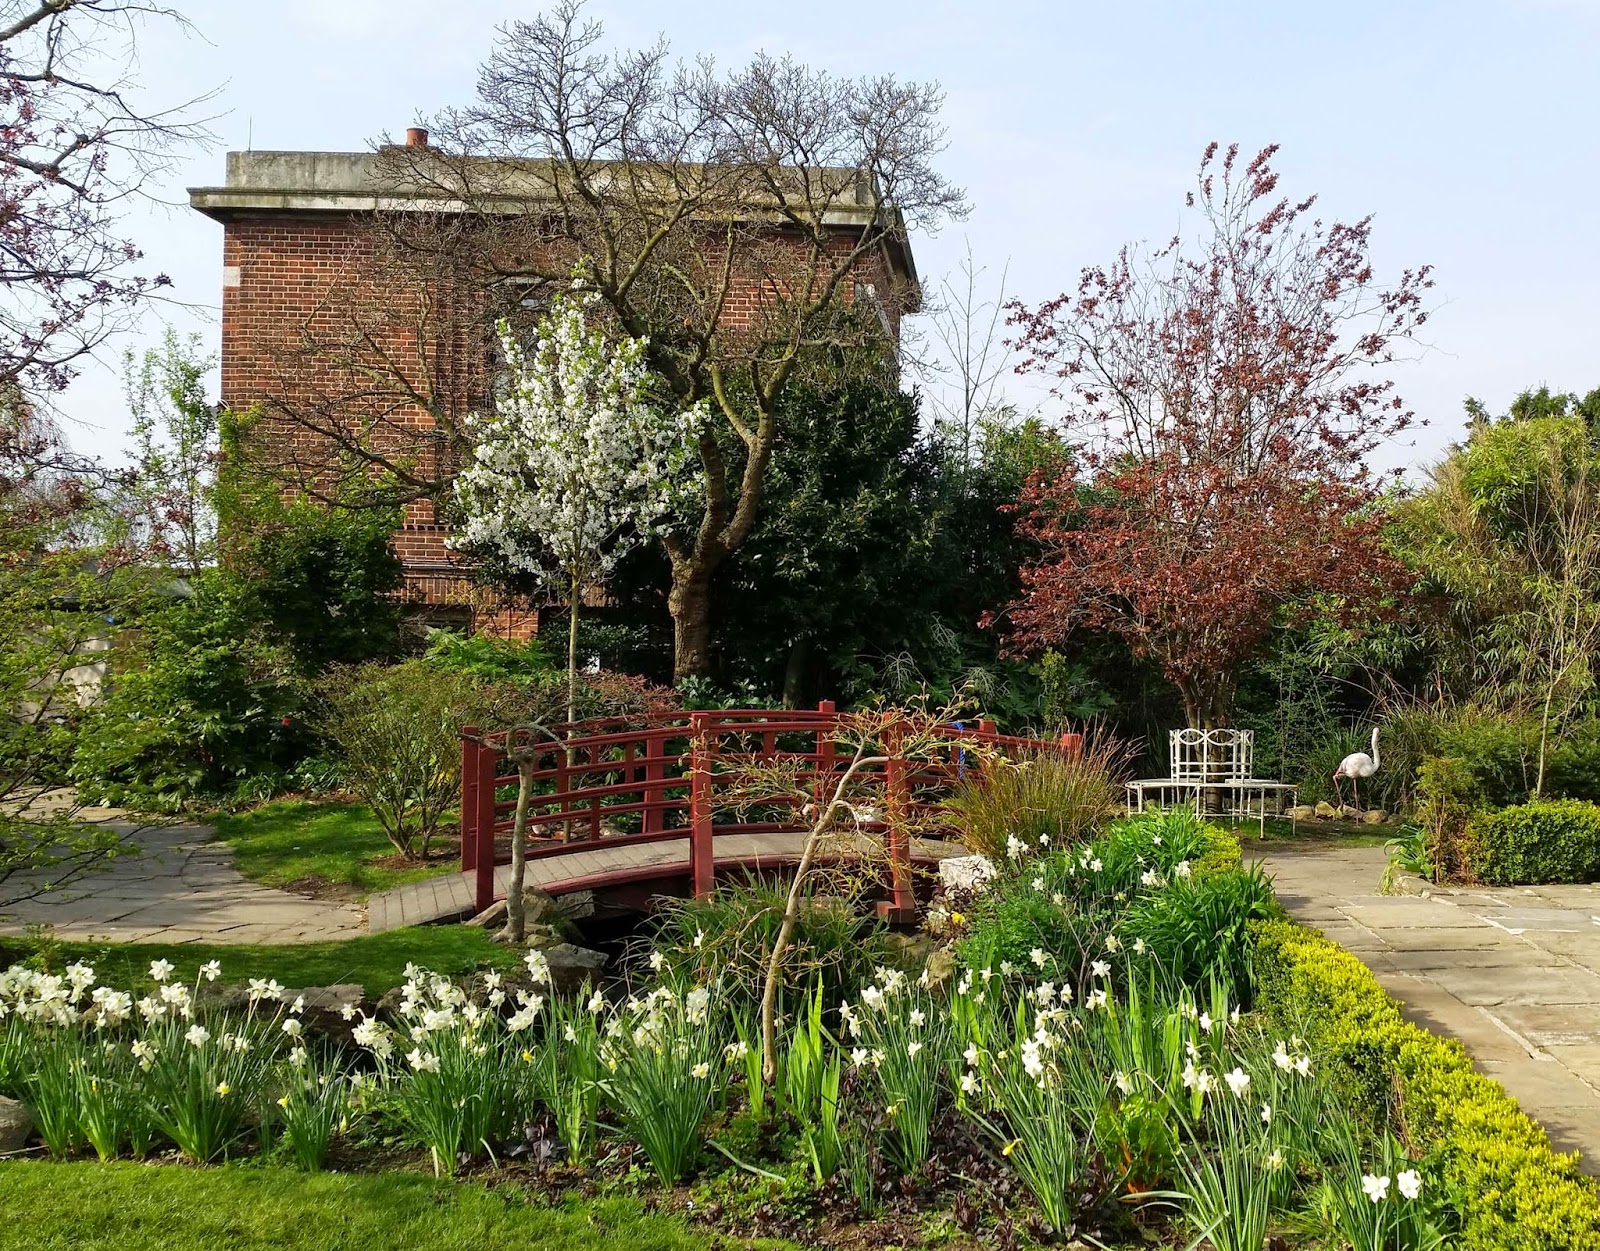 Kensington Roof Garden, London. English Garden